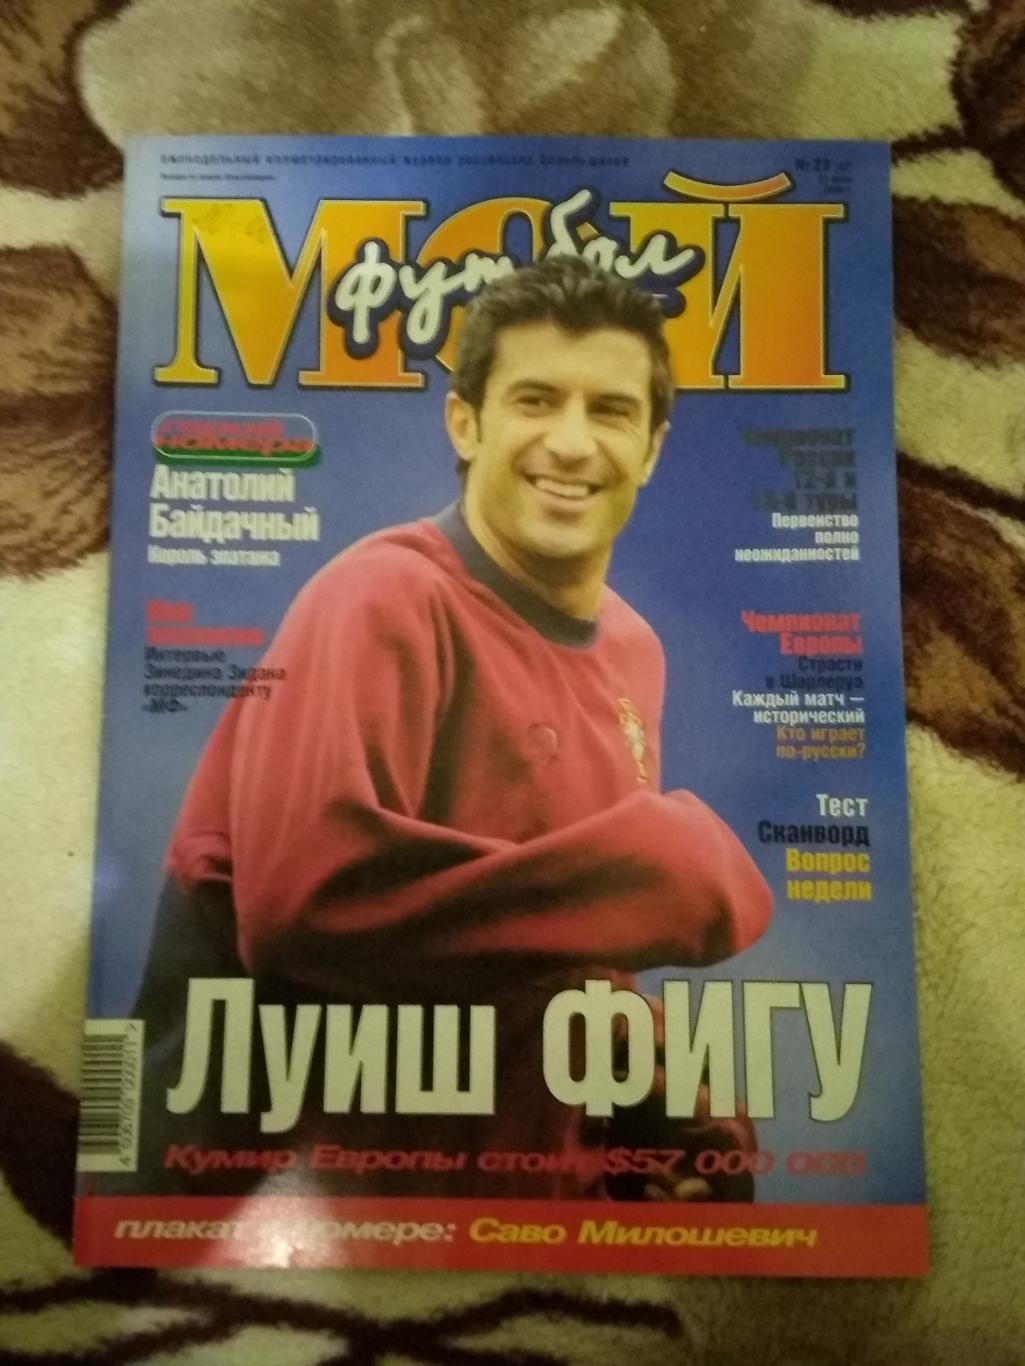 Журнал.Мой футбол №23 2000 г. (Чемпионат Европы) (постер).